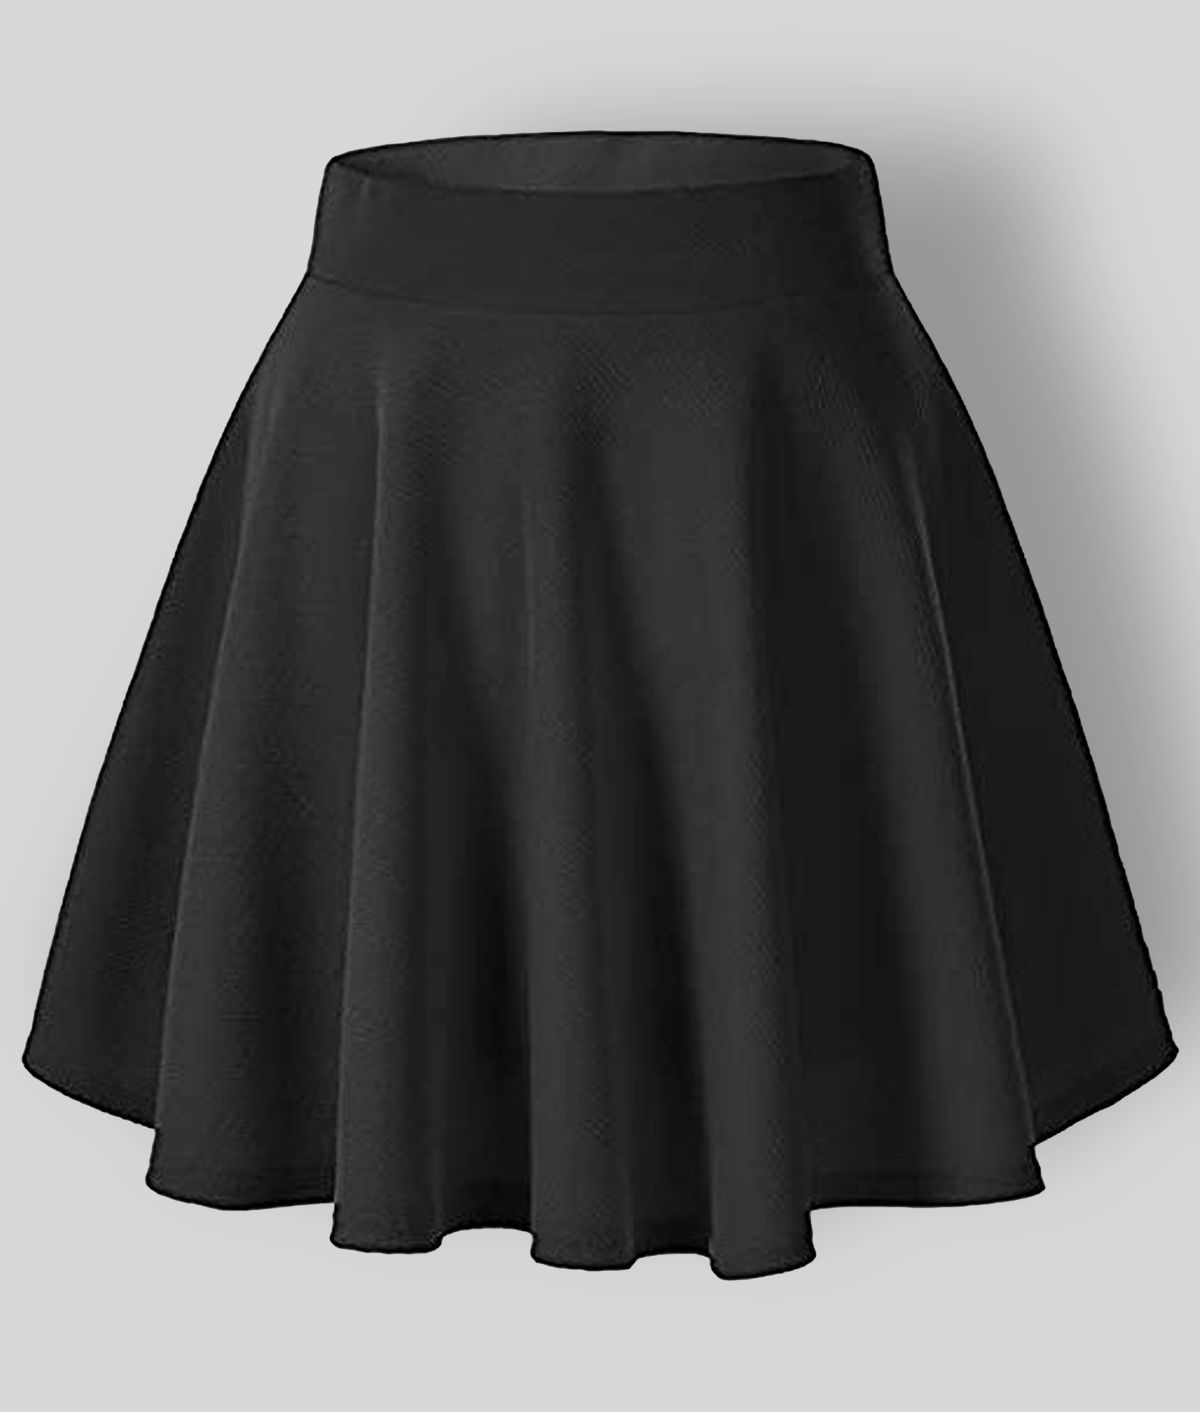 Miss Ethnik - Black Polyester Women's Circle Skirt ( Pack of 1 )